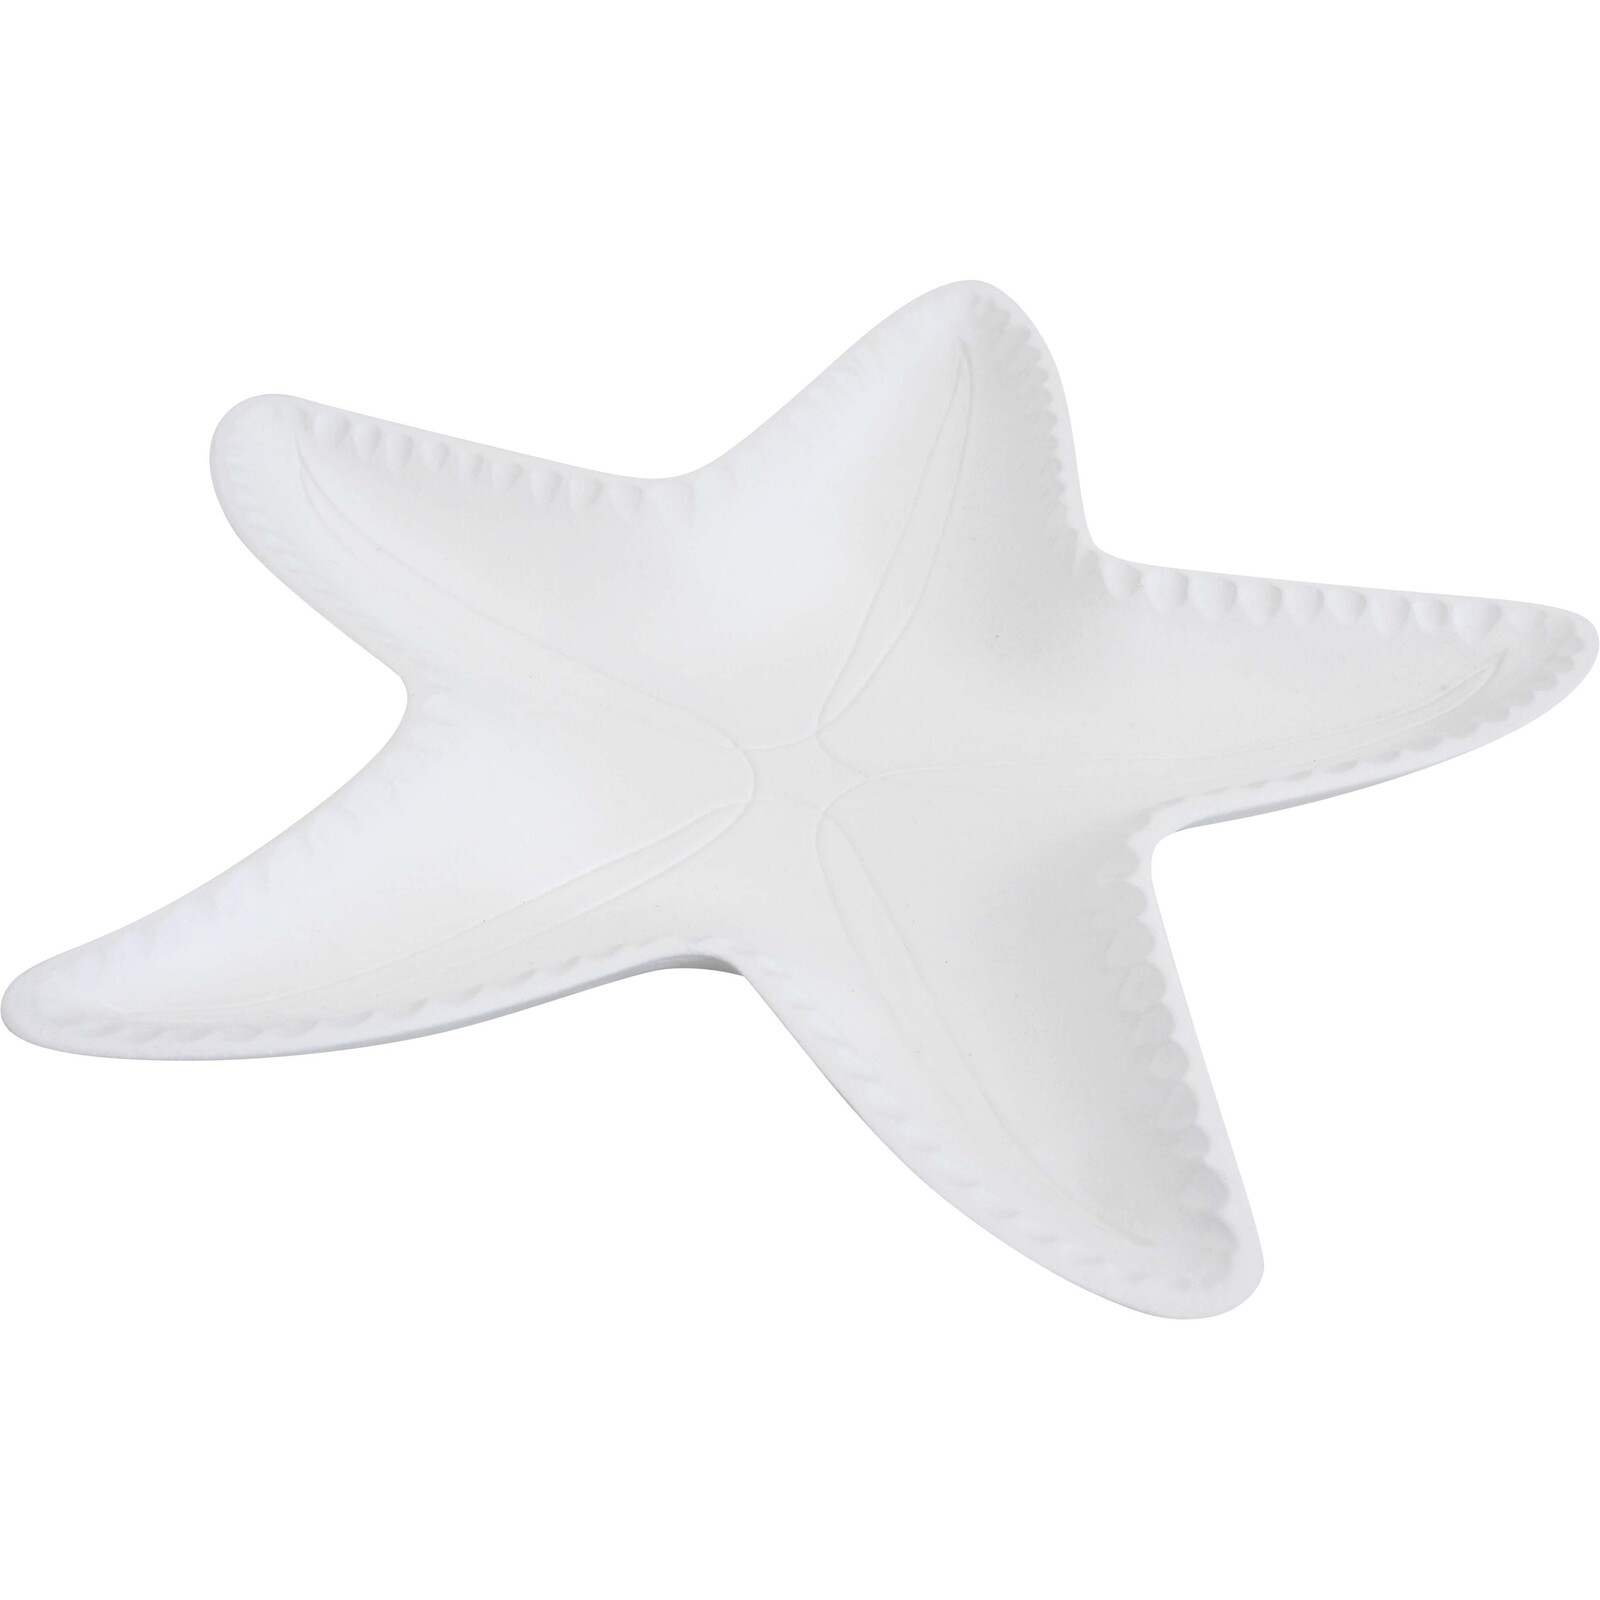 Starfish Plate Lrg White